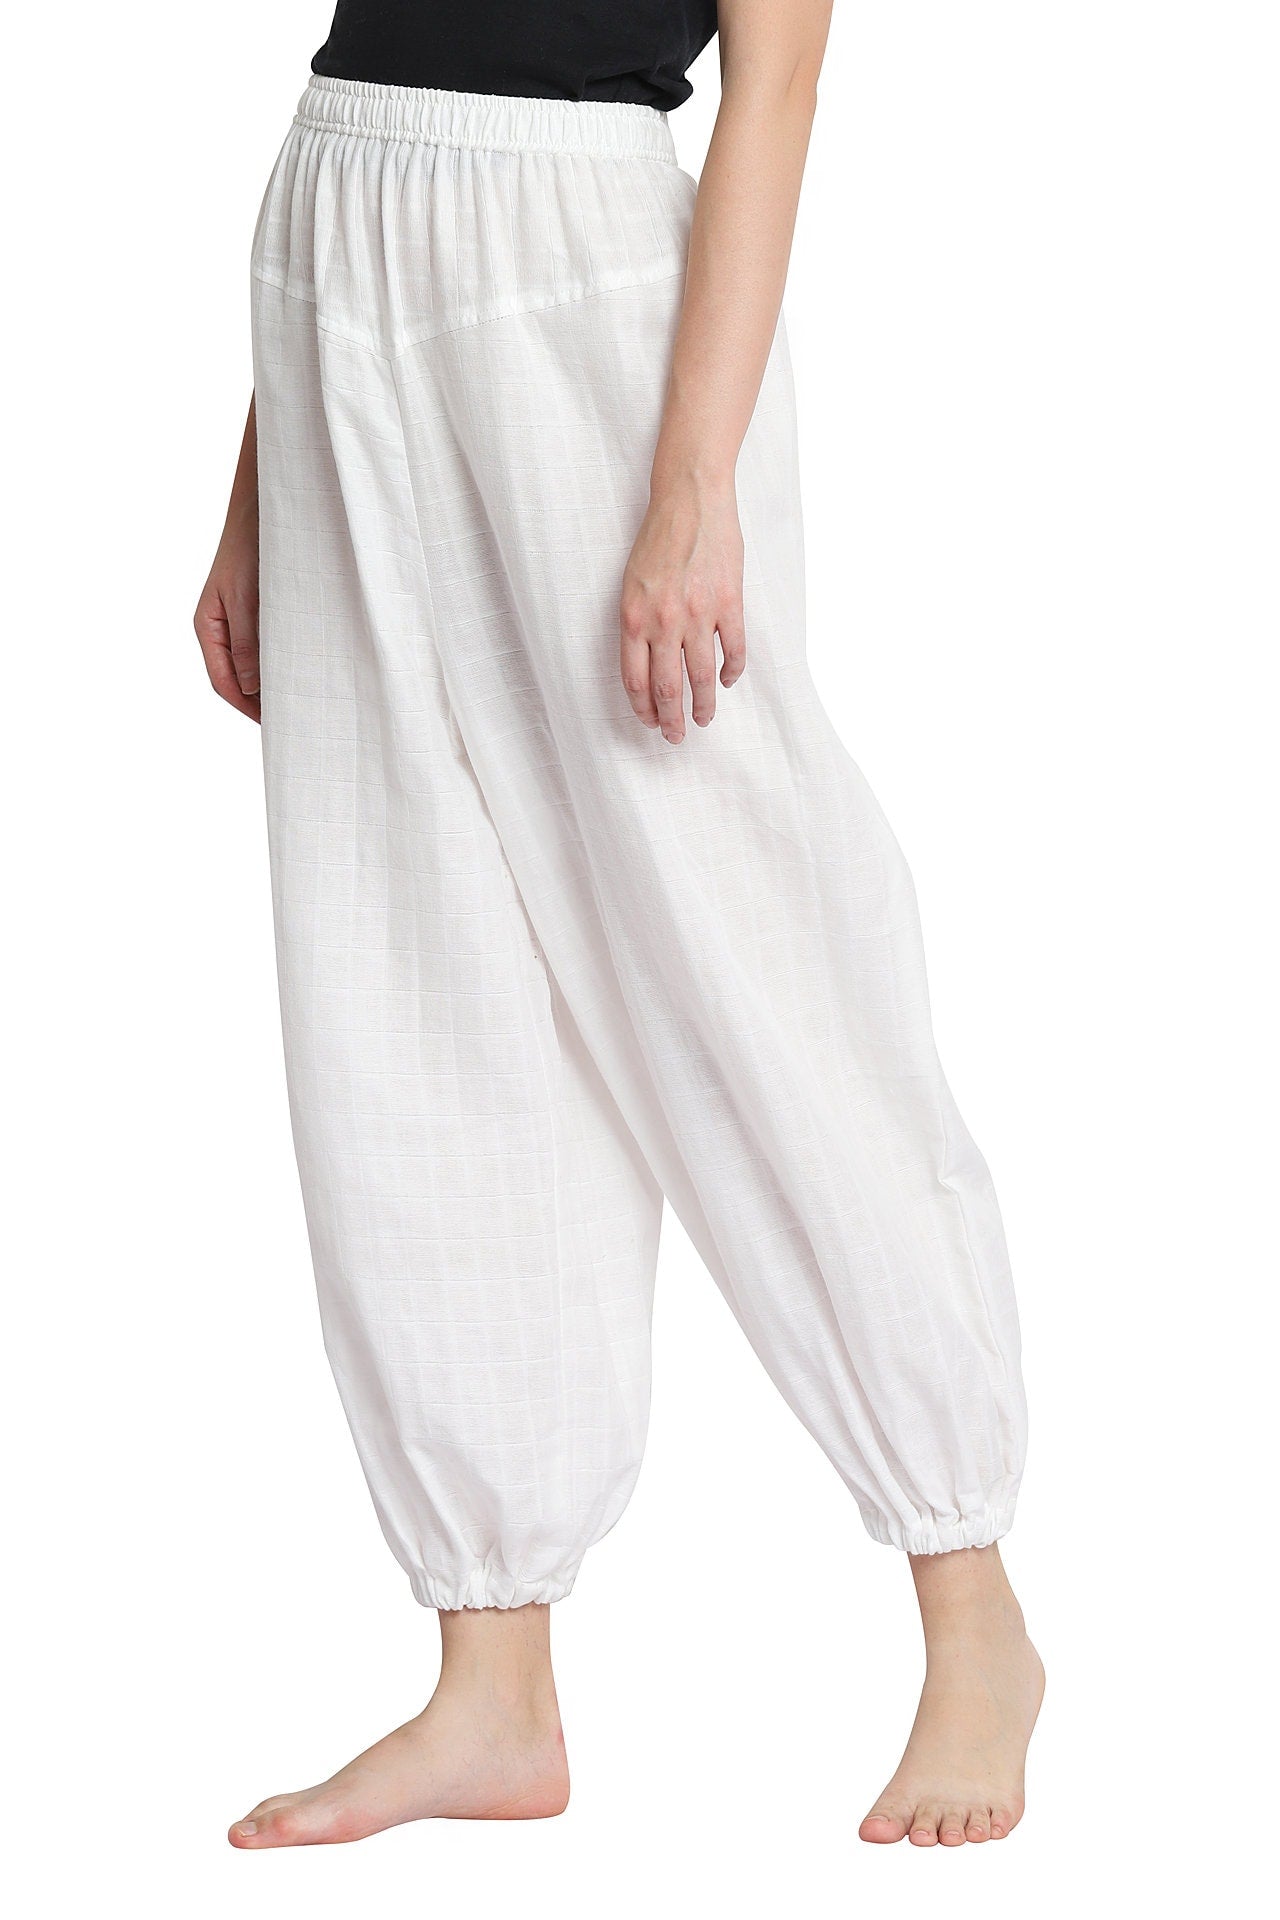 Organic Cotton Unisex Yoga Pants - Harem Style - YogaKargha